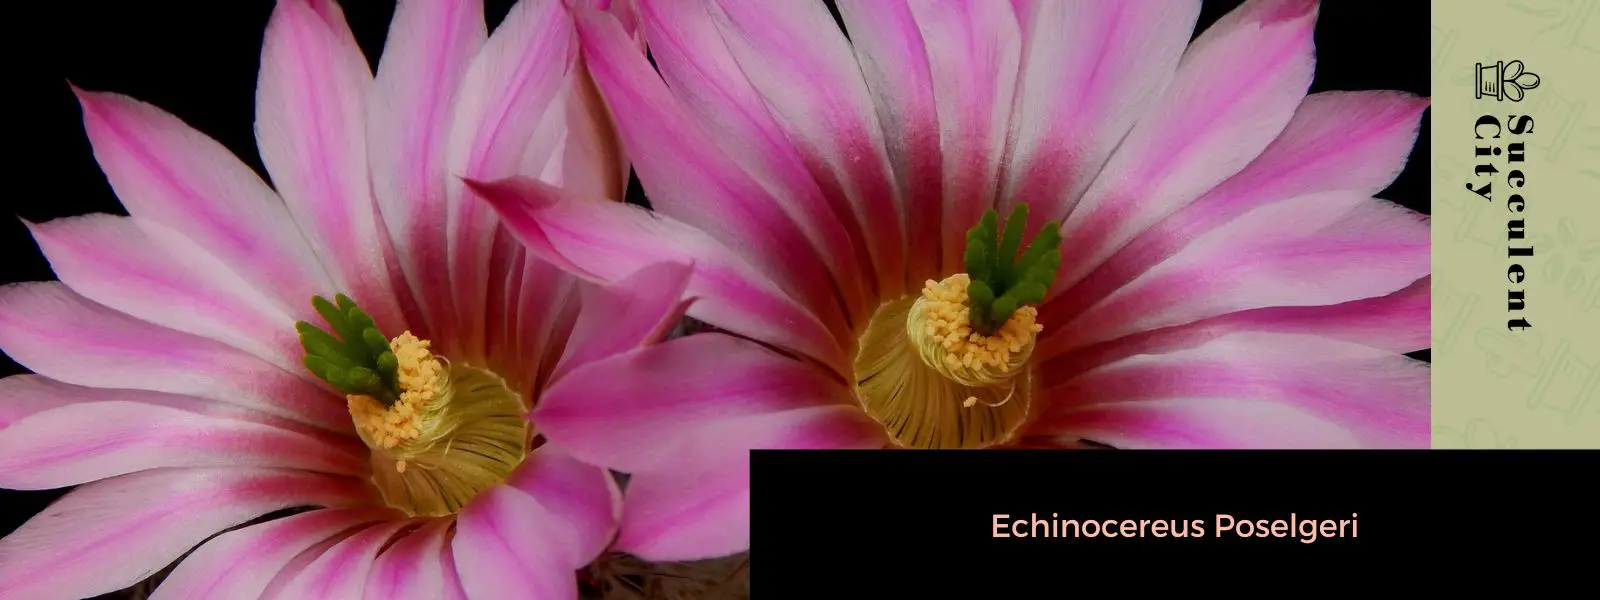 Echinocereus Poselgeri (El cactus dalia)